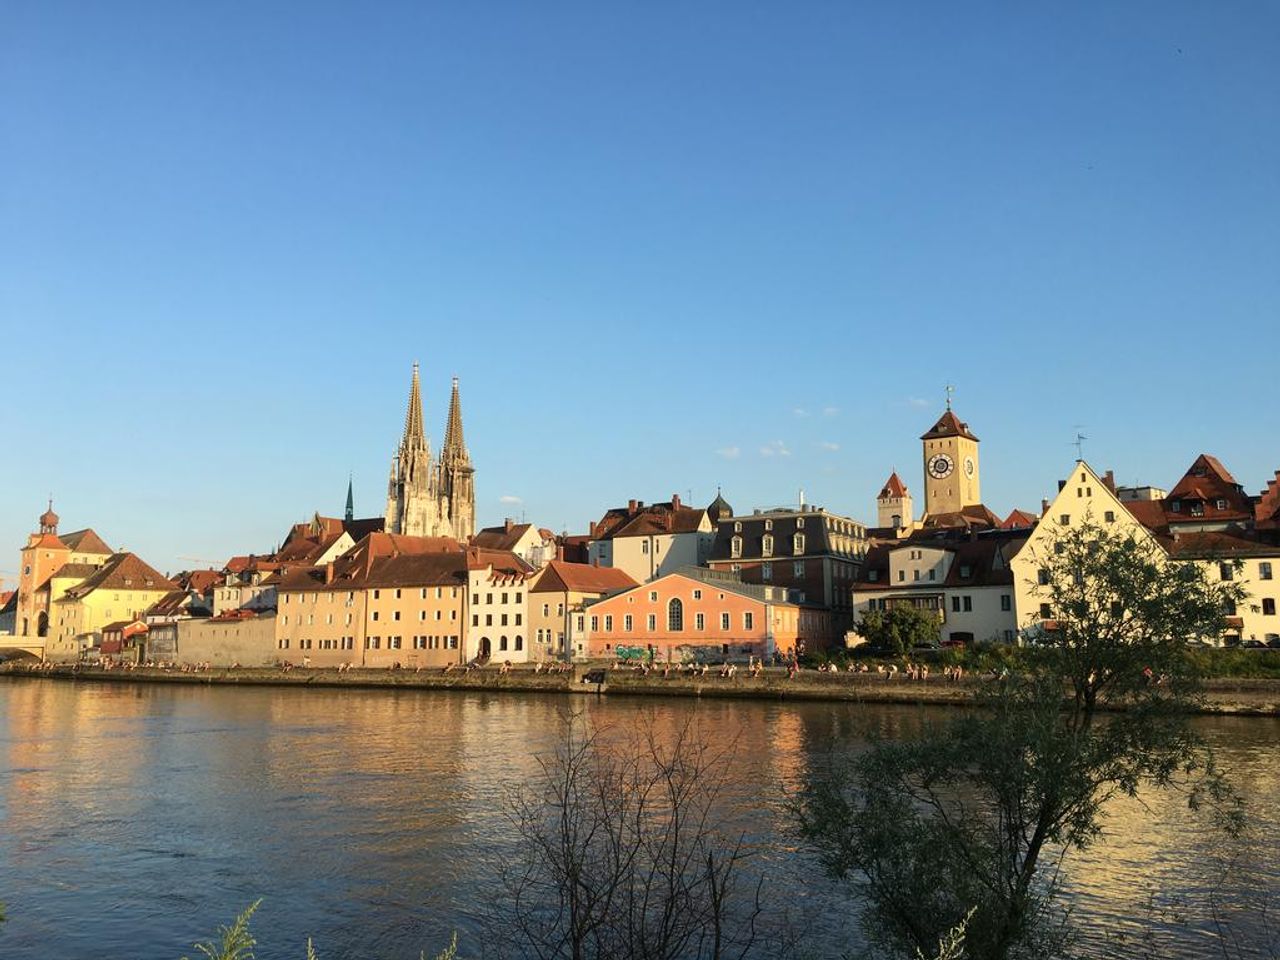 Radeln im wunderschönen Regensburg (4 ÜN)